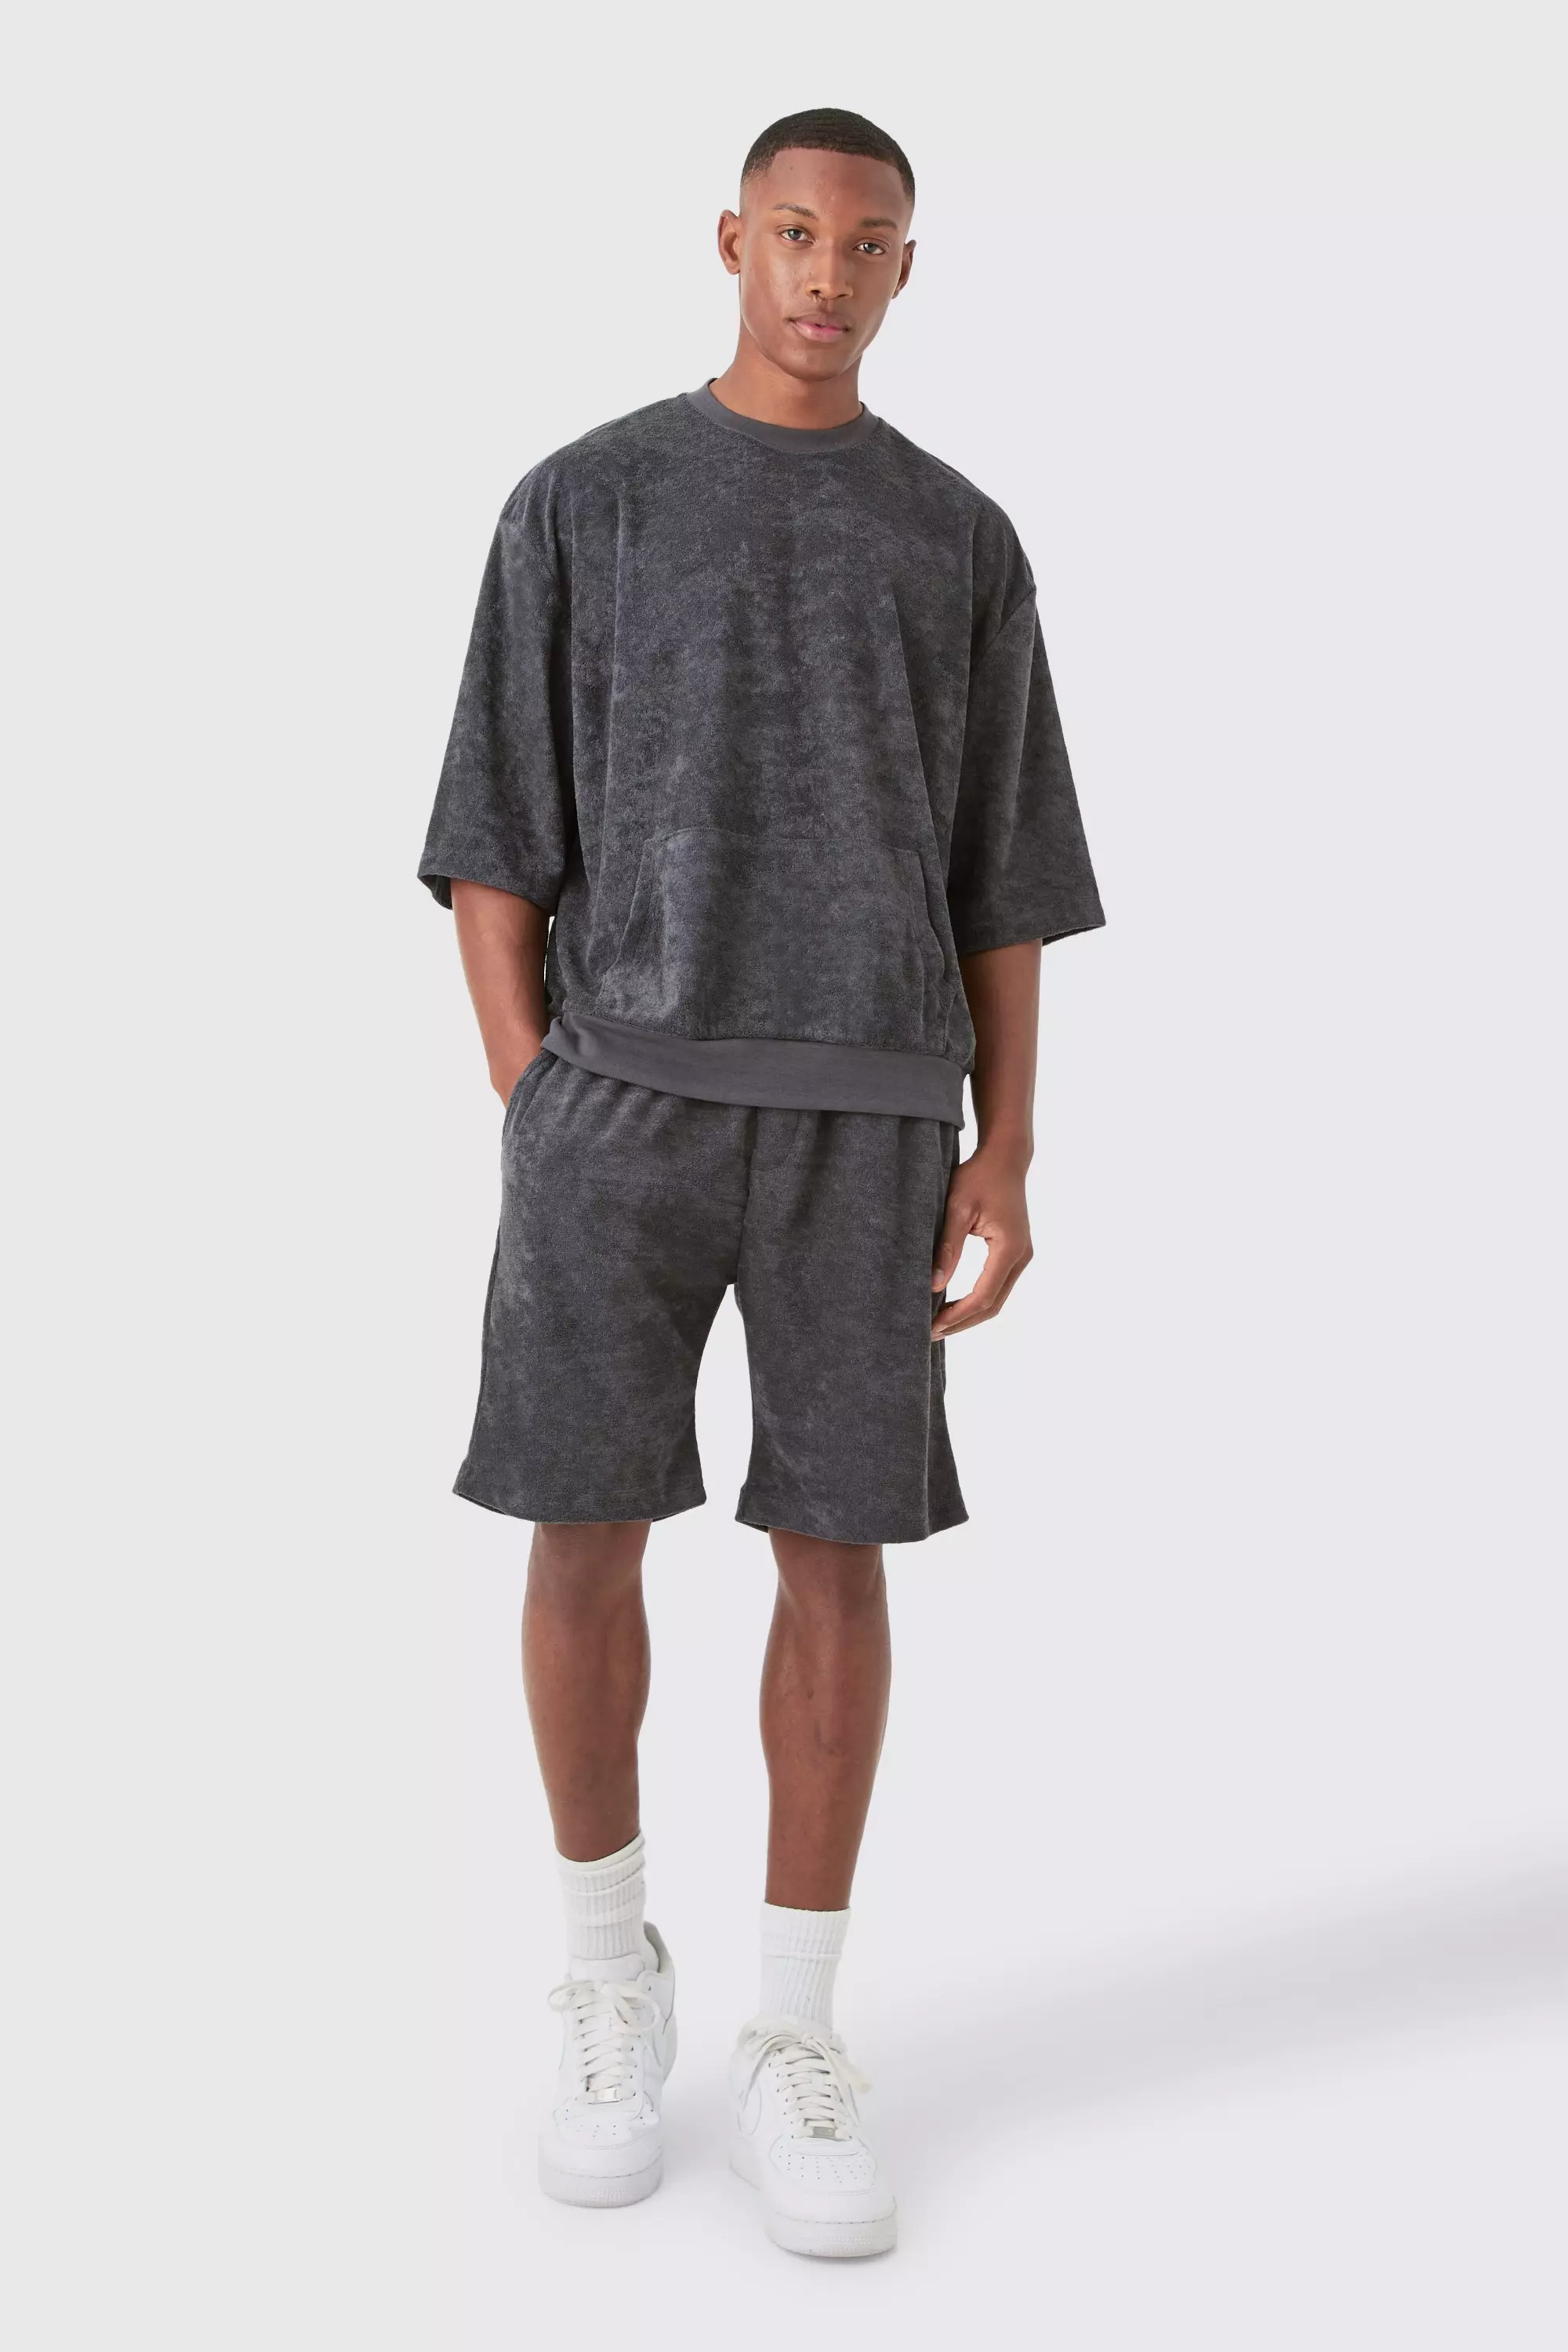 Charcoal Grey Short Sleeve Oversized Boxy Towelling Sweat Short Tracksuit